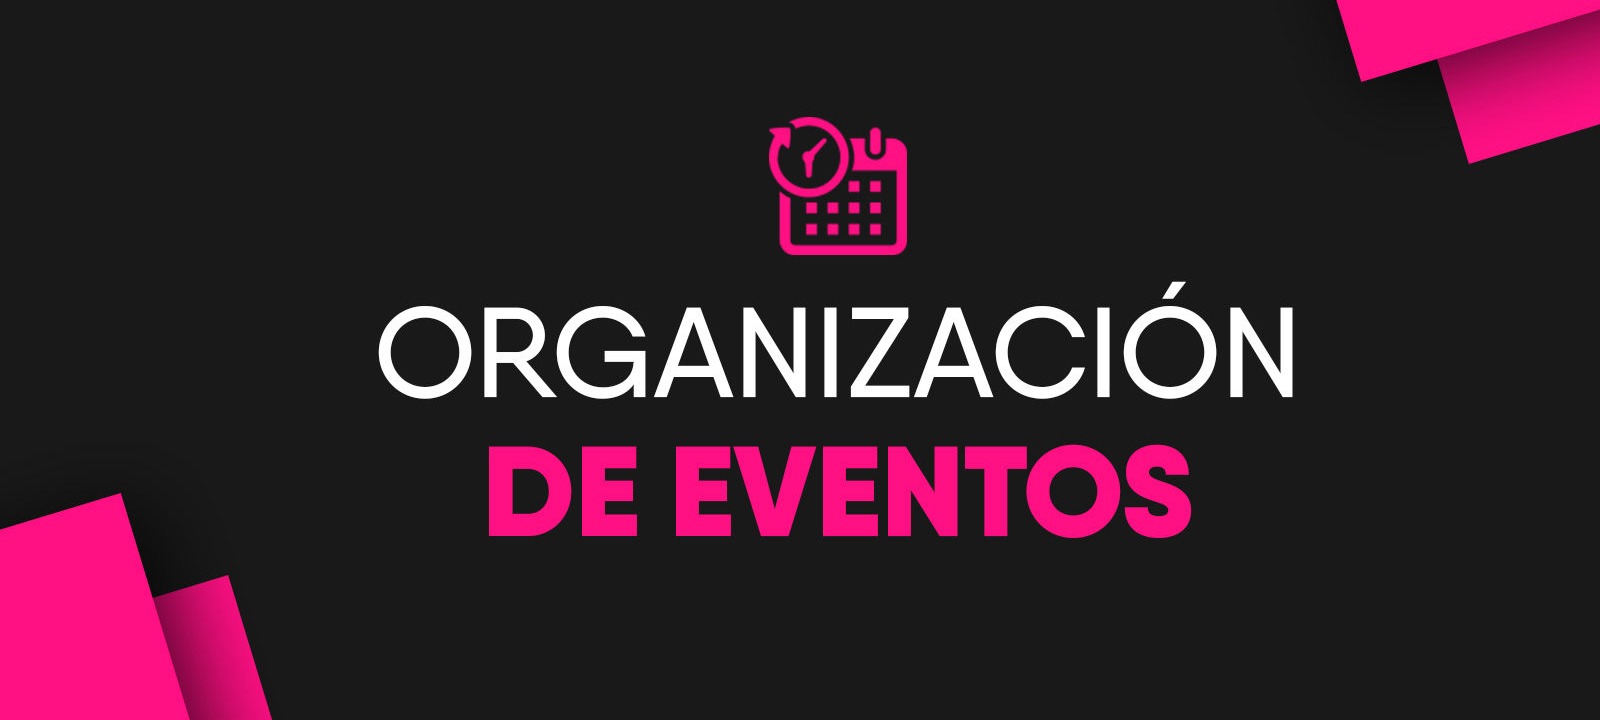 Organización de eventos 